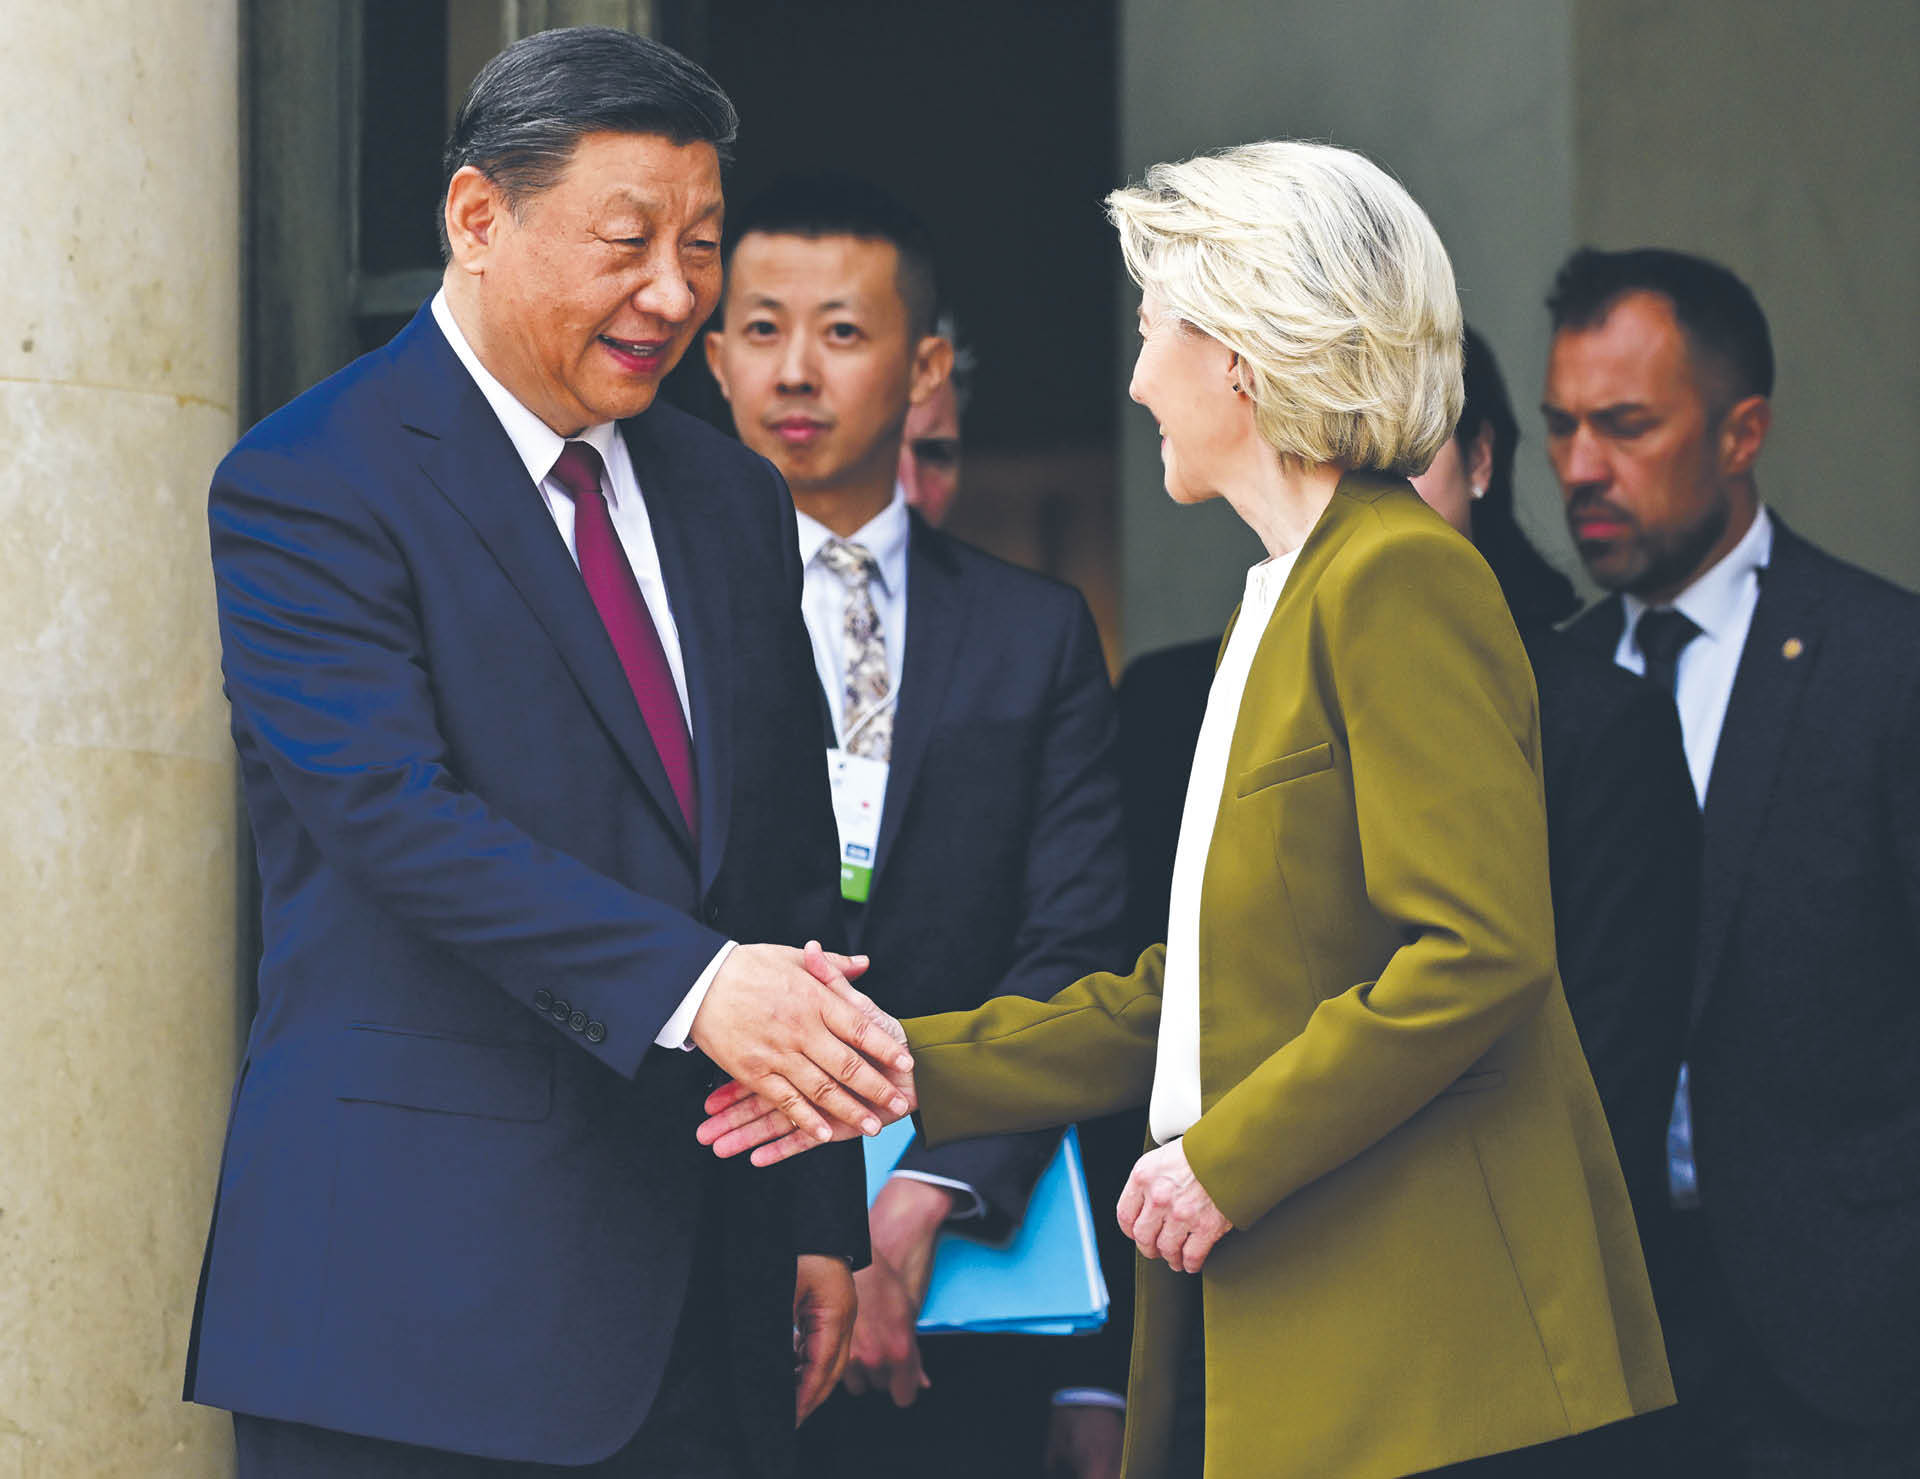 Zarówno Chiny, jak i Unia Europejska mogą być bardziej zainteresowane polubownym rozwiązaniem sporu. Wspólnej wizji jednak nie widać